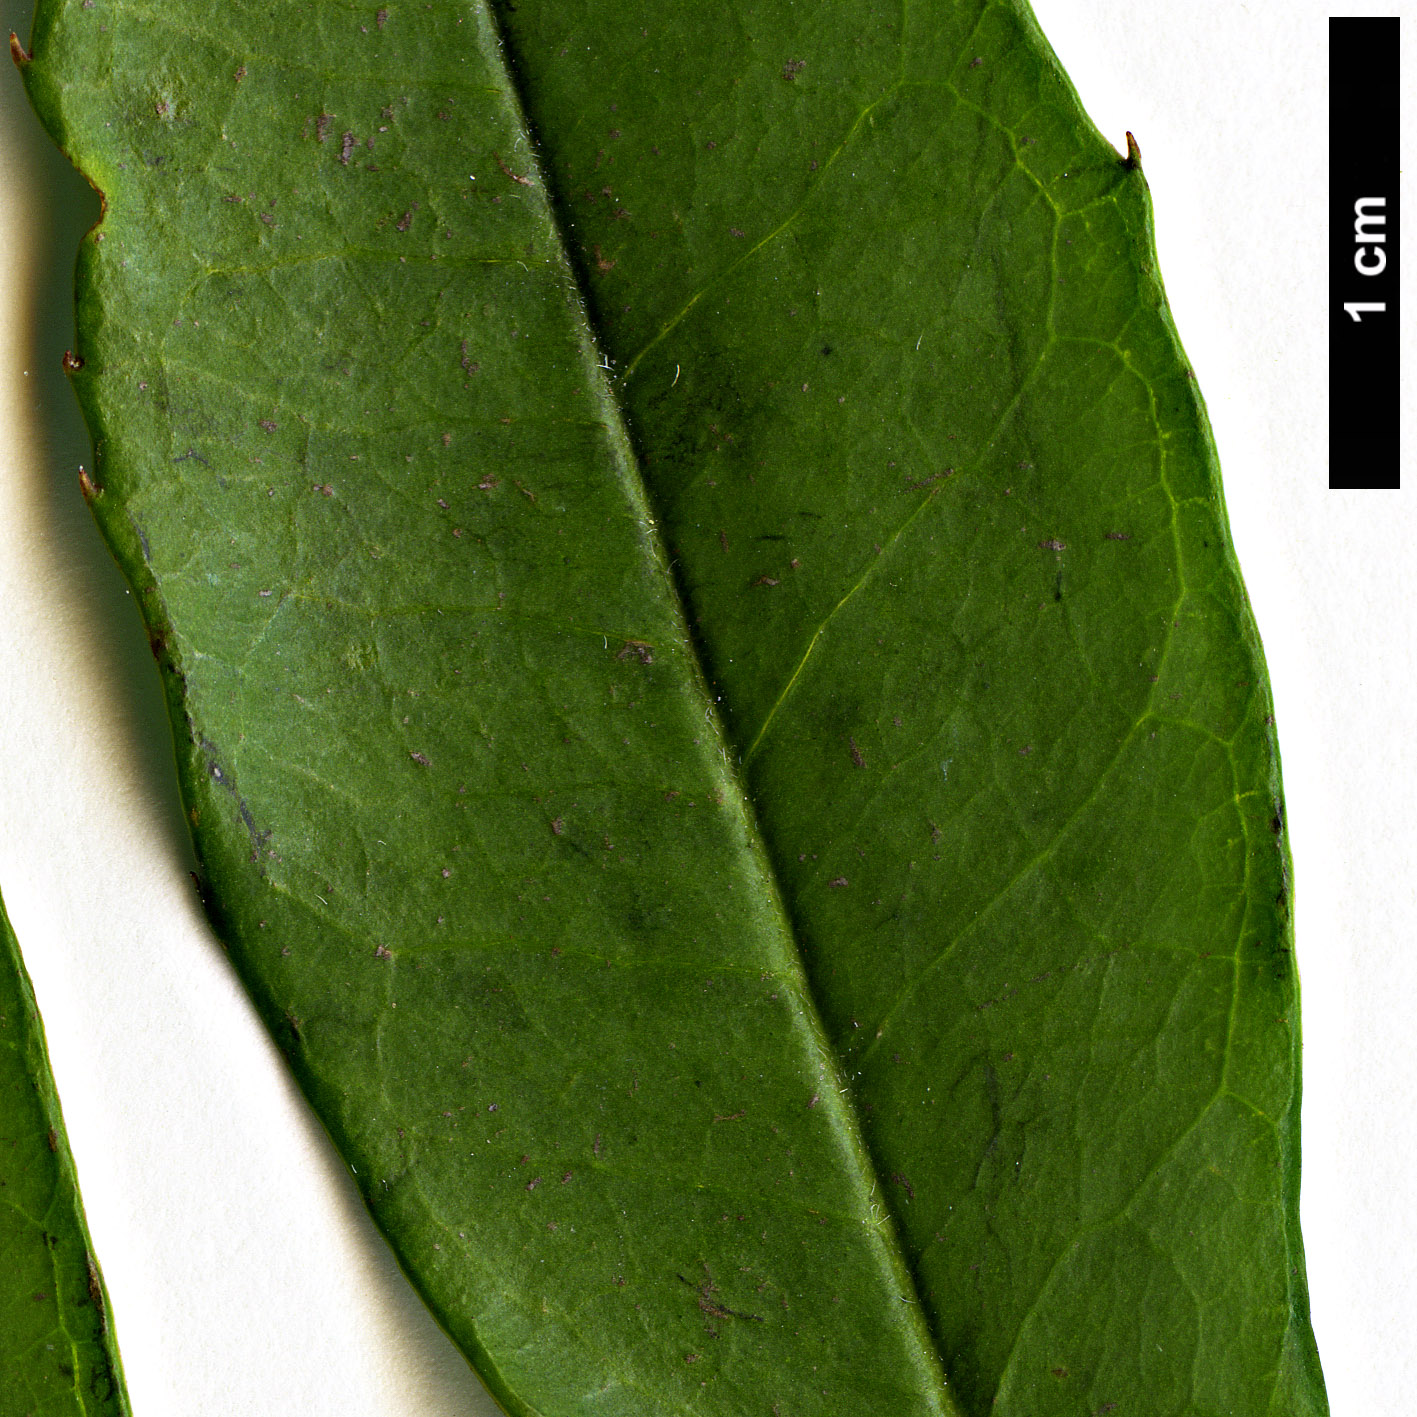 High resolution image: Family: Aquifoliaceae - Genus: Ilex - Taxon: cassine